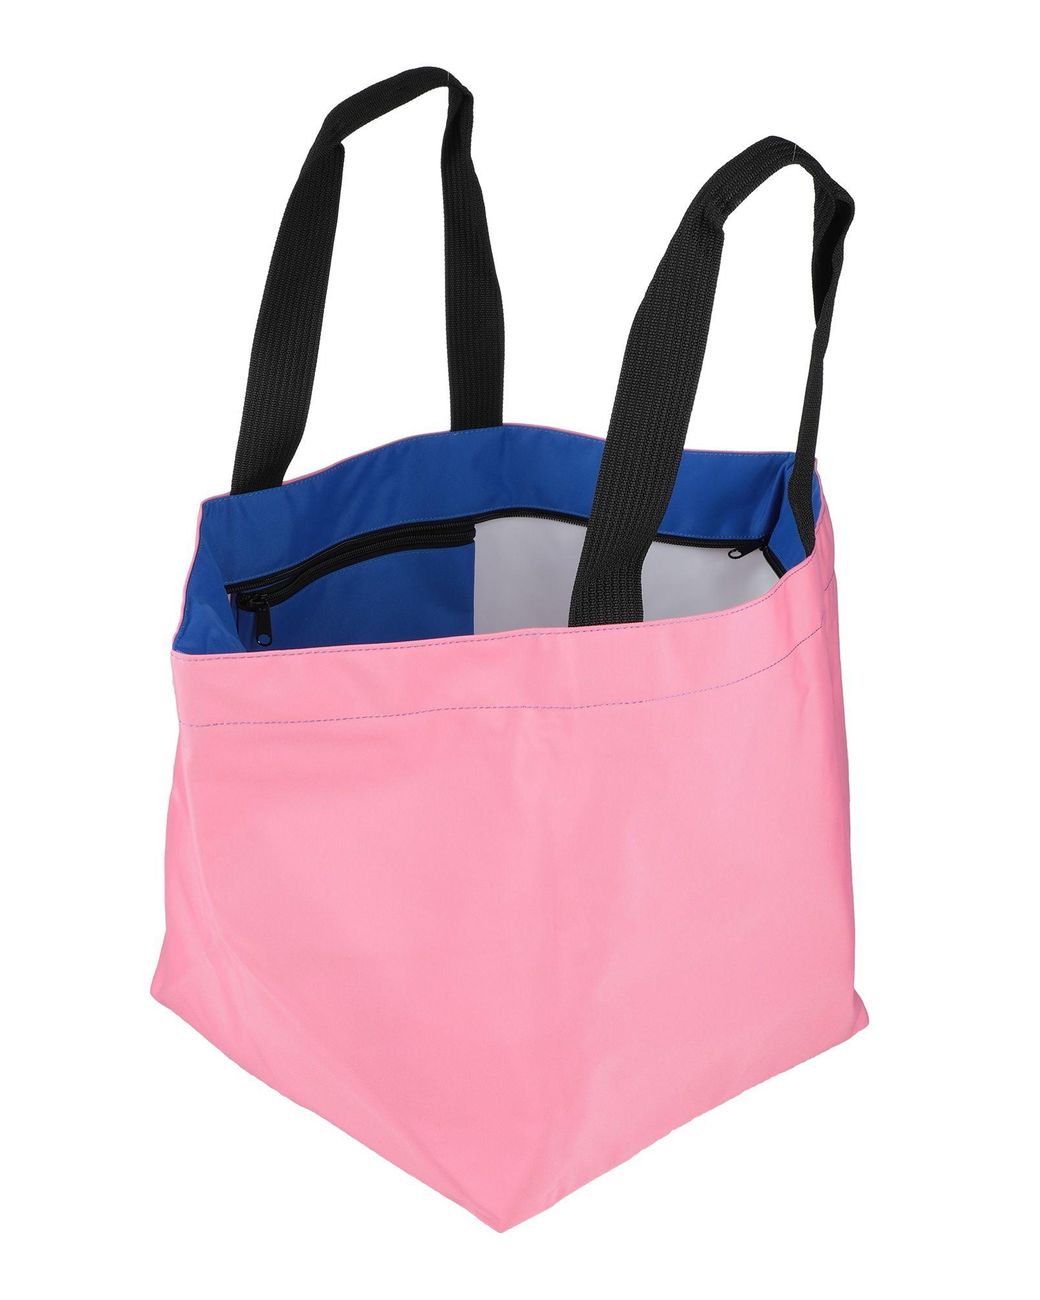 Herve Chapelier Paris Handbag in Pink | Lyst Australia